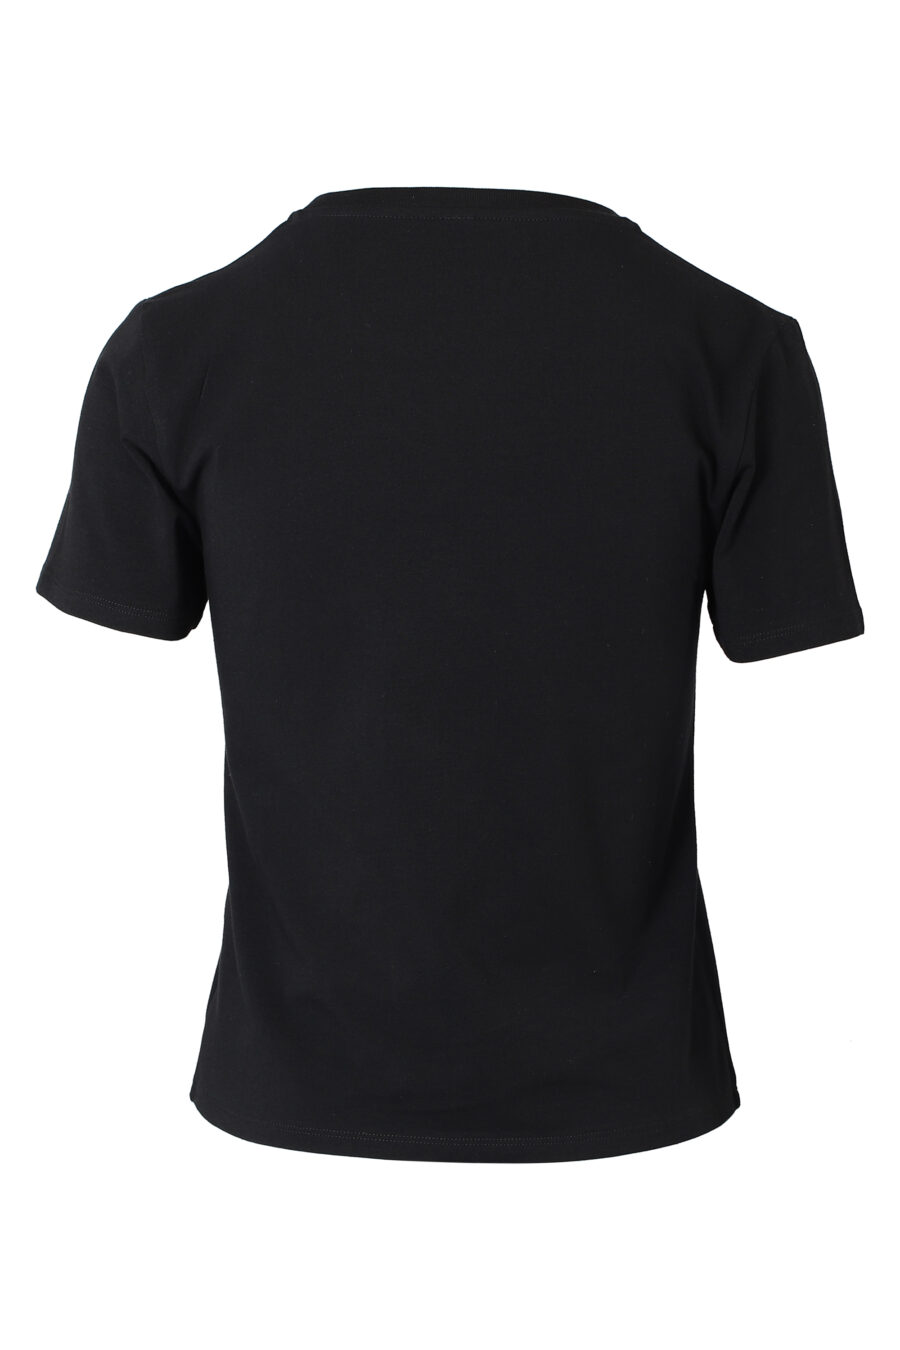 Schwarzes T-Shirt mit goldenem Mini-Logo mit Strasssteinen und Frontknoten - IMG 9836